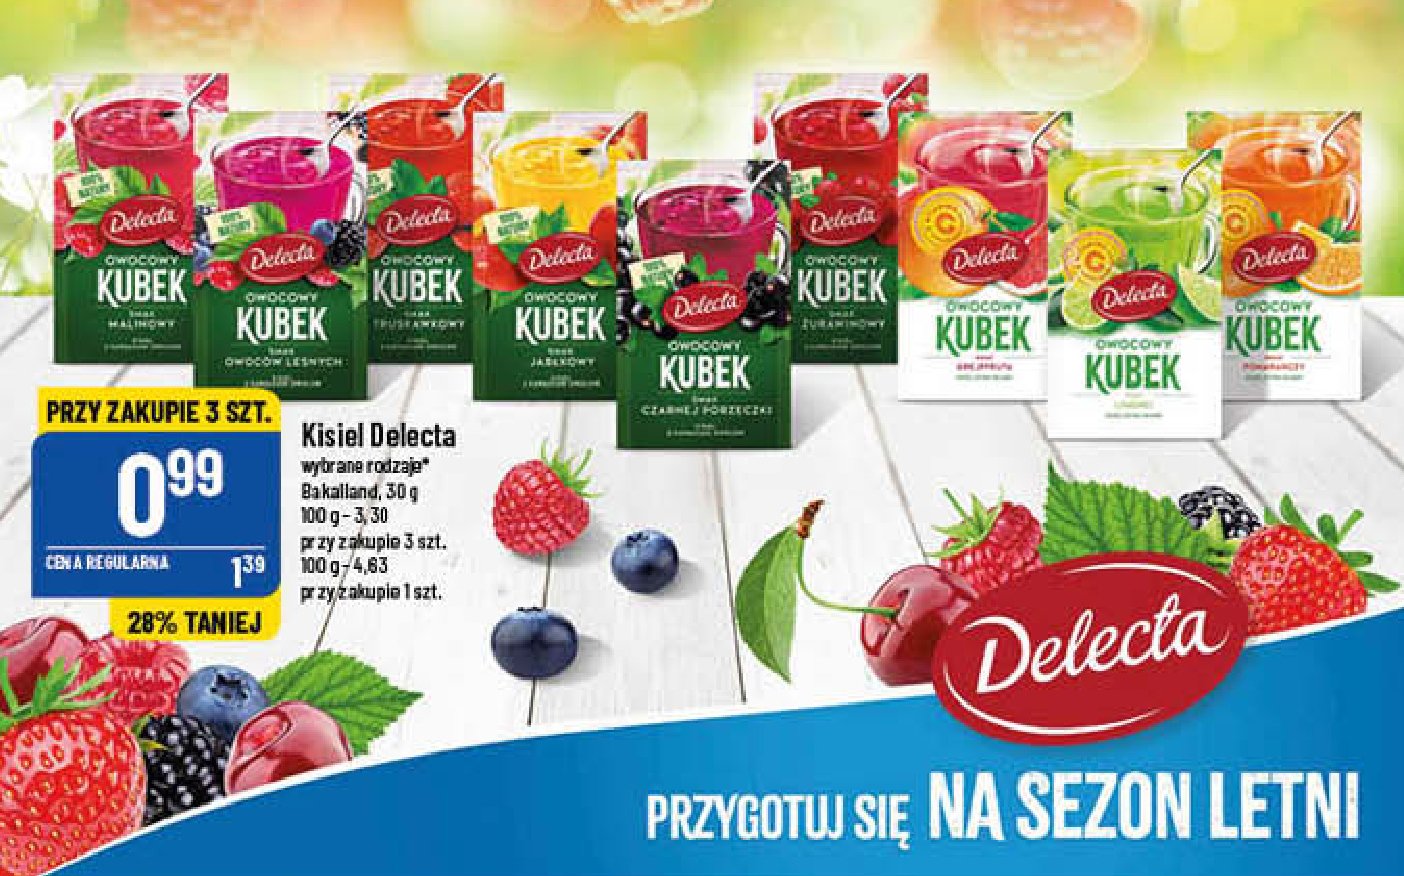 Kisiel o smaku grejpfruta Delecta owocowy kubek promocja